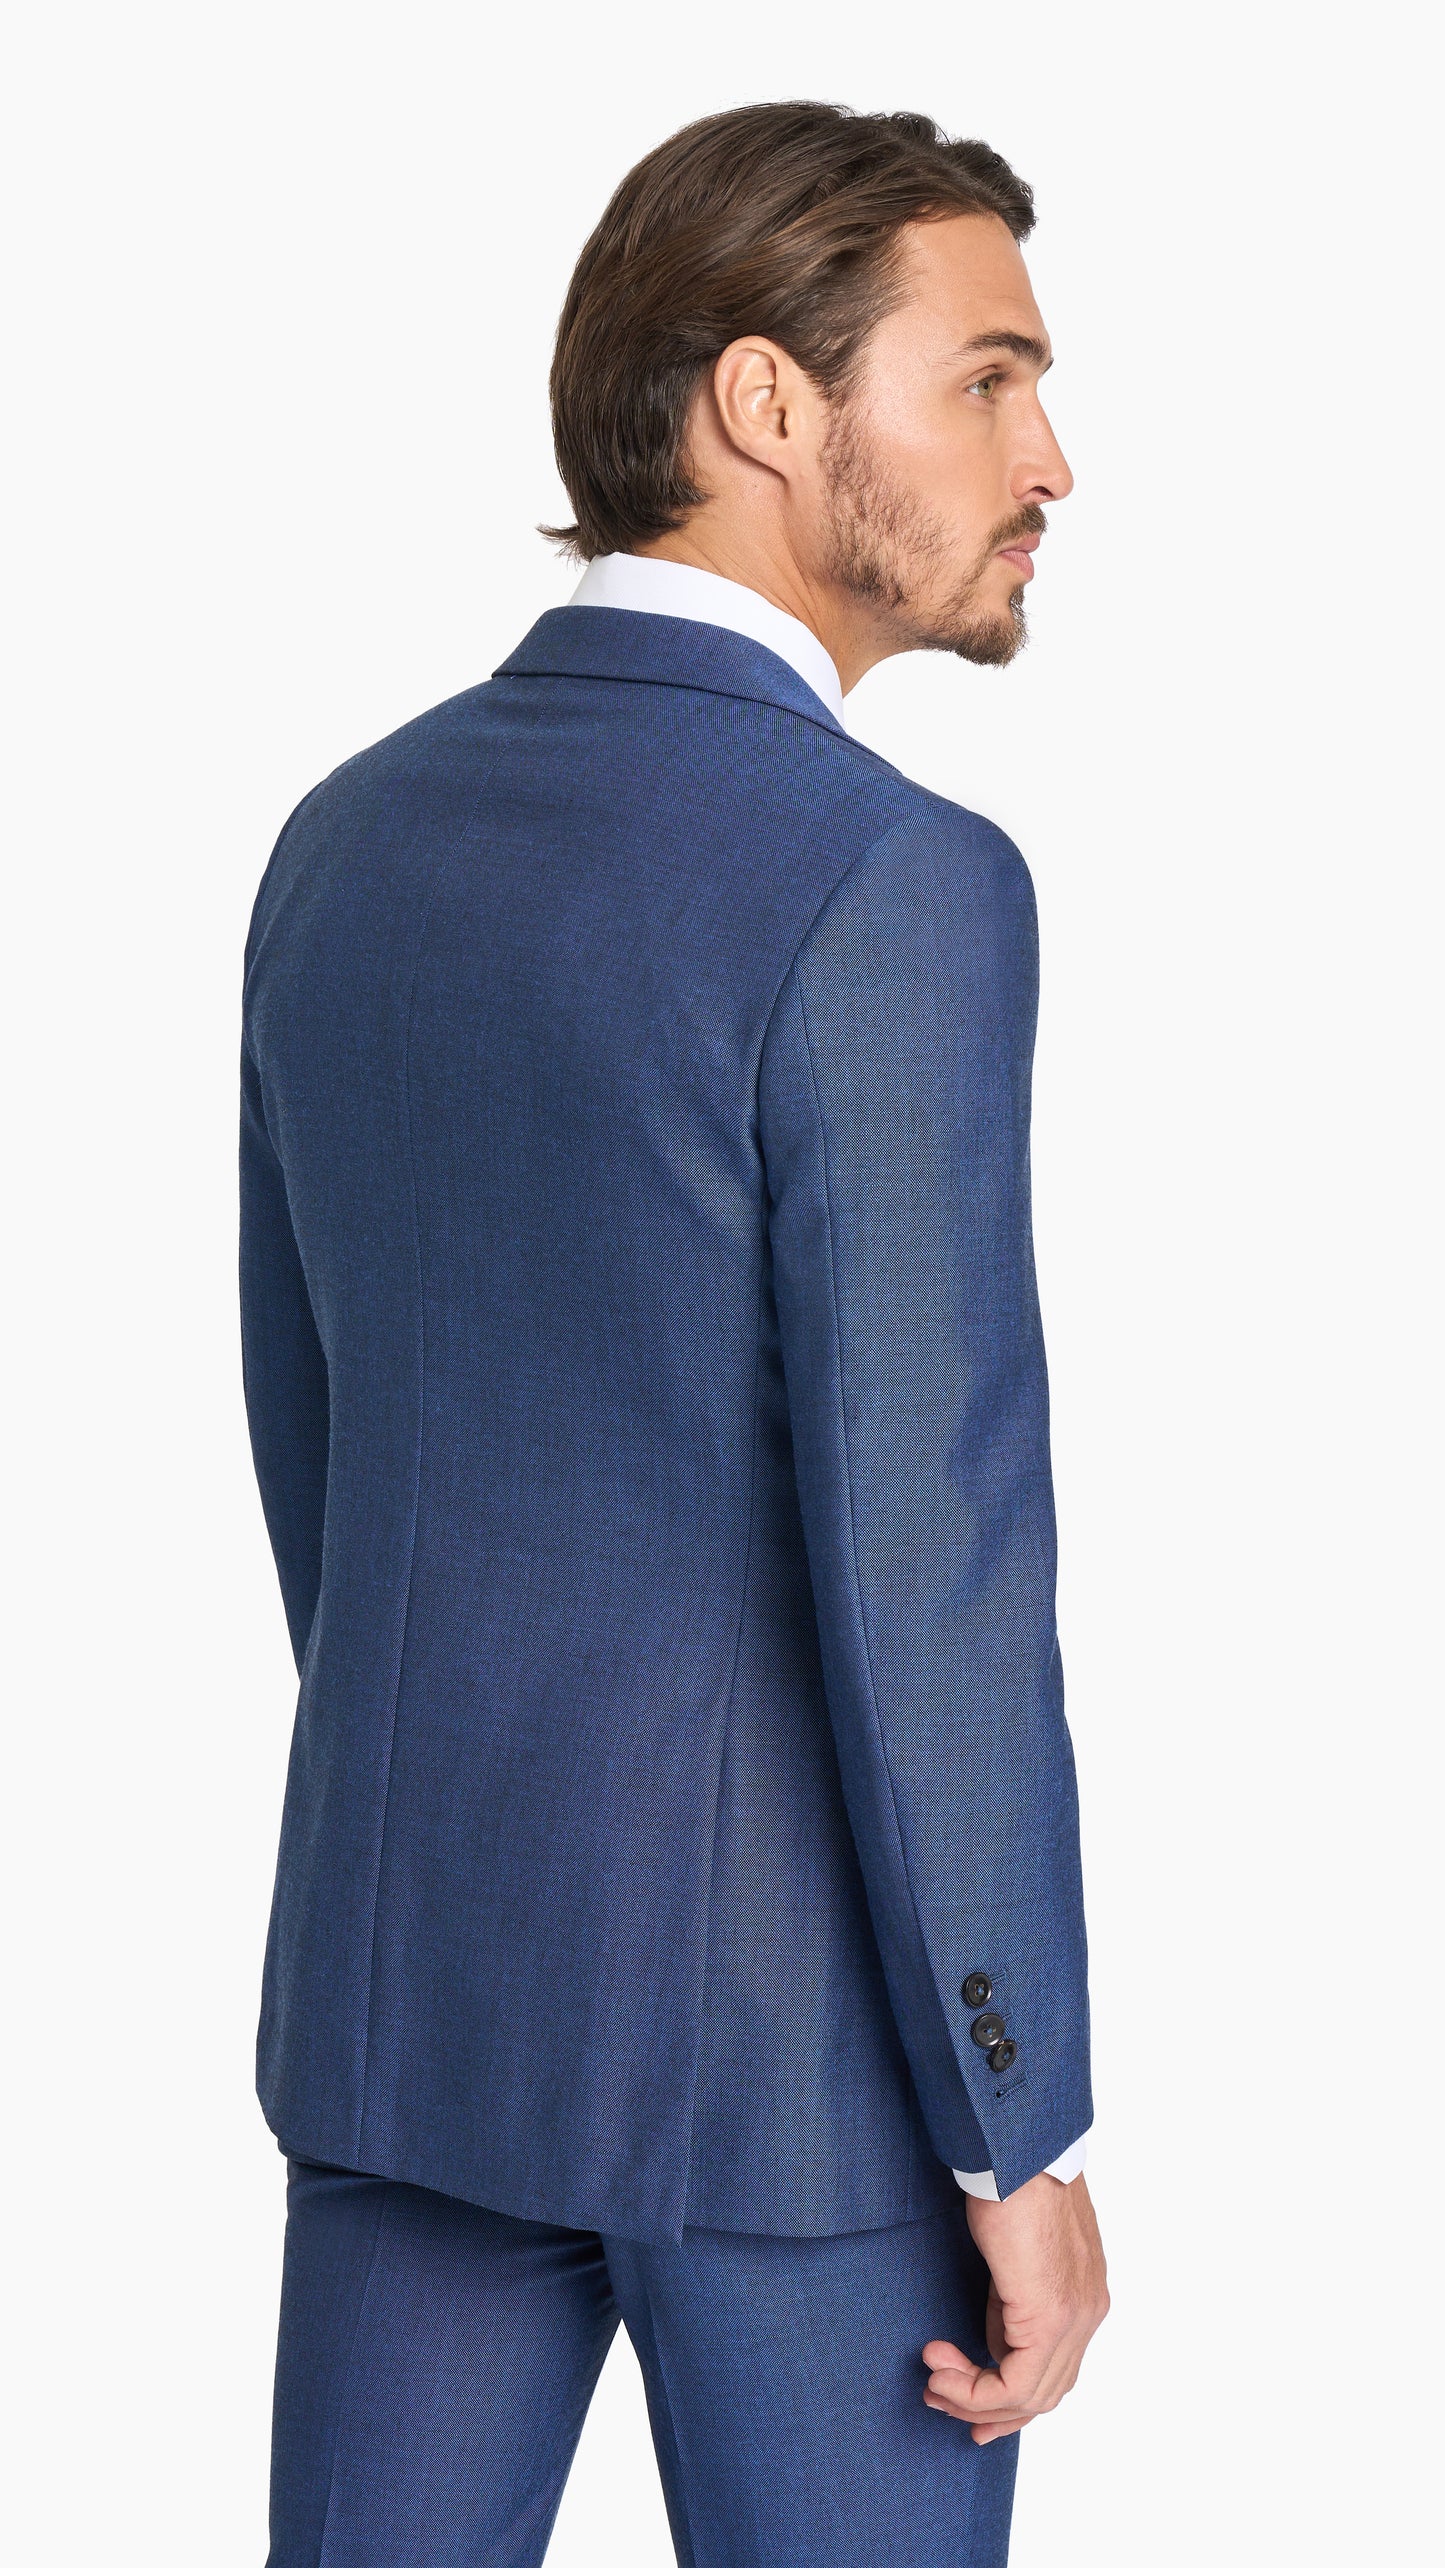 Tonic Blue Hopsack Suit